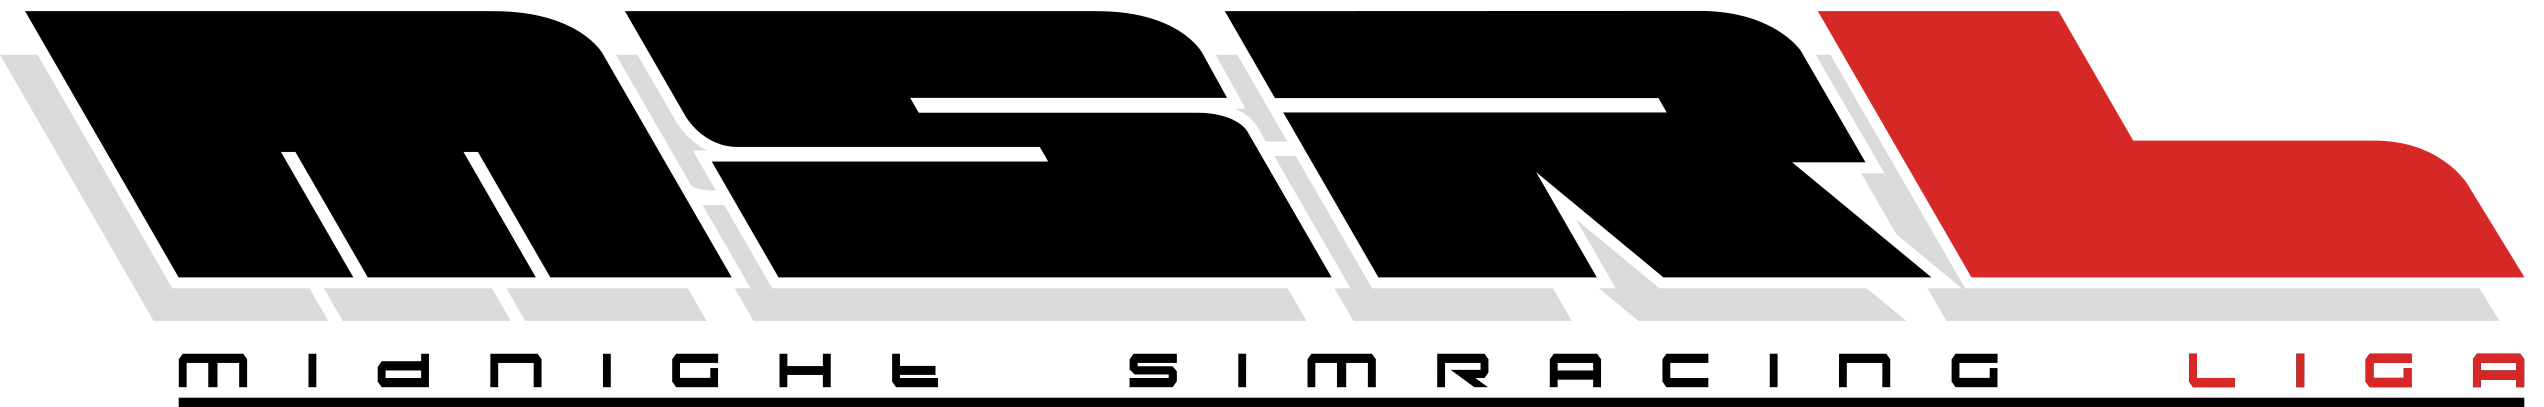 MSRL Logo Black.png